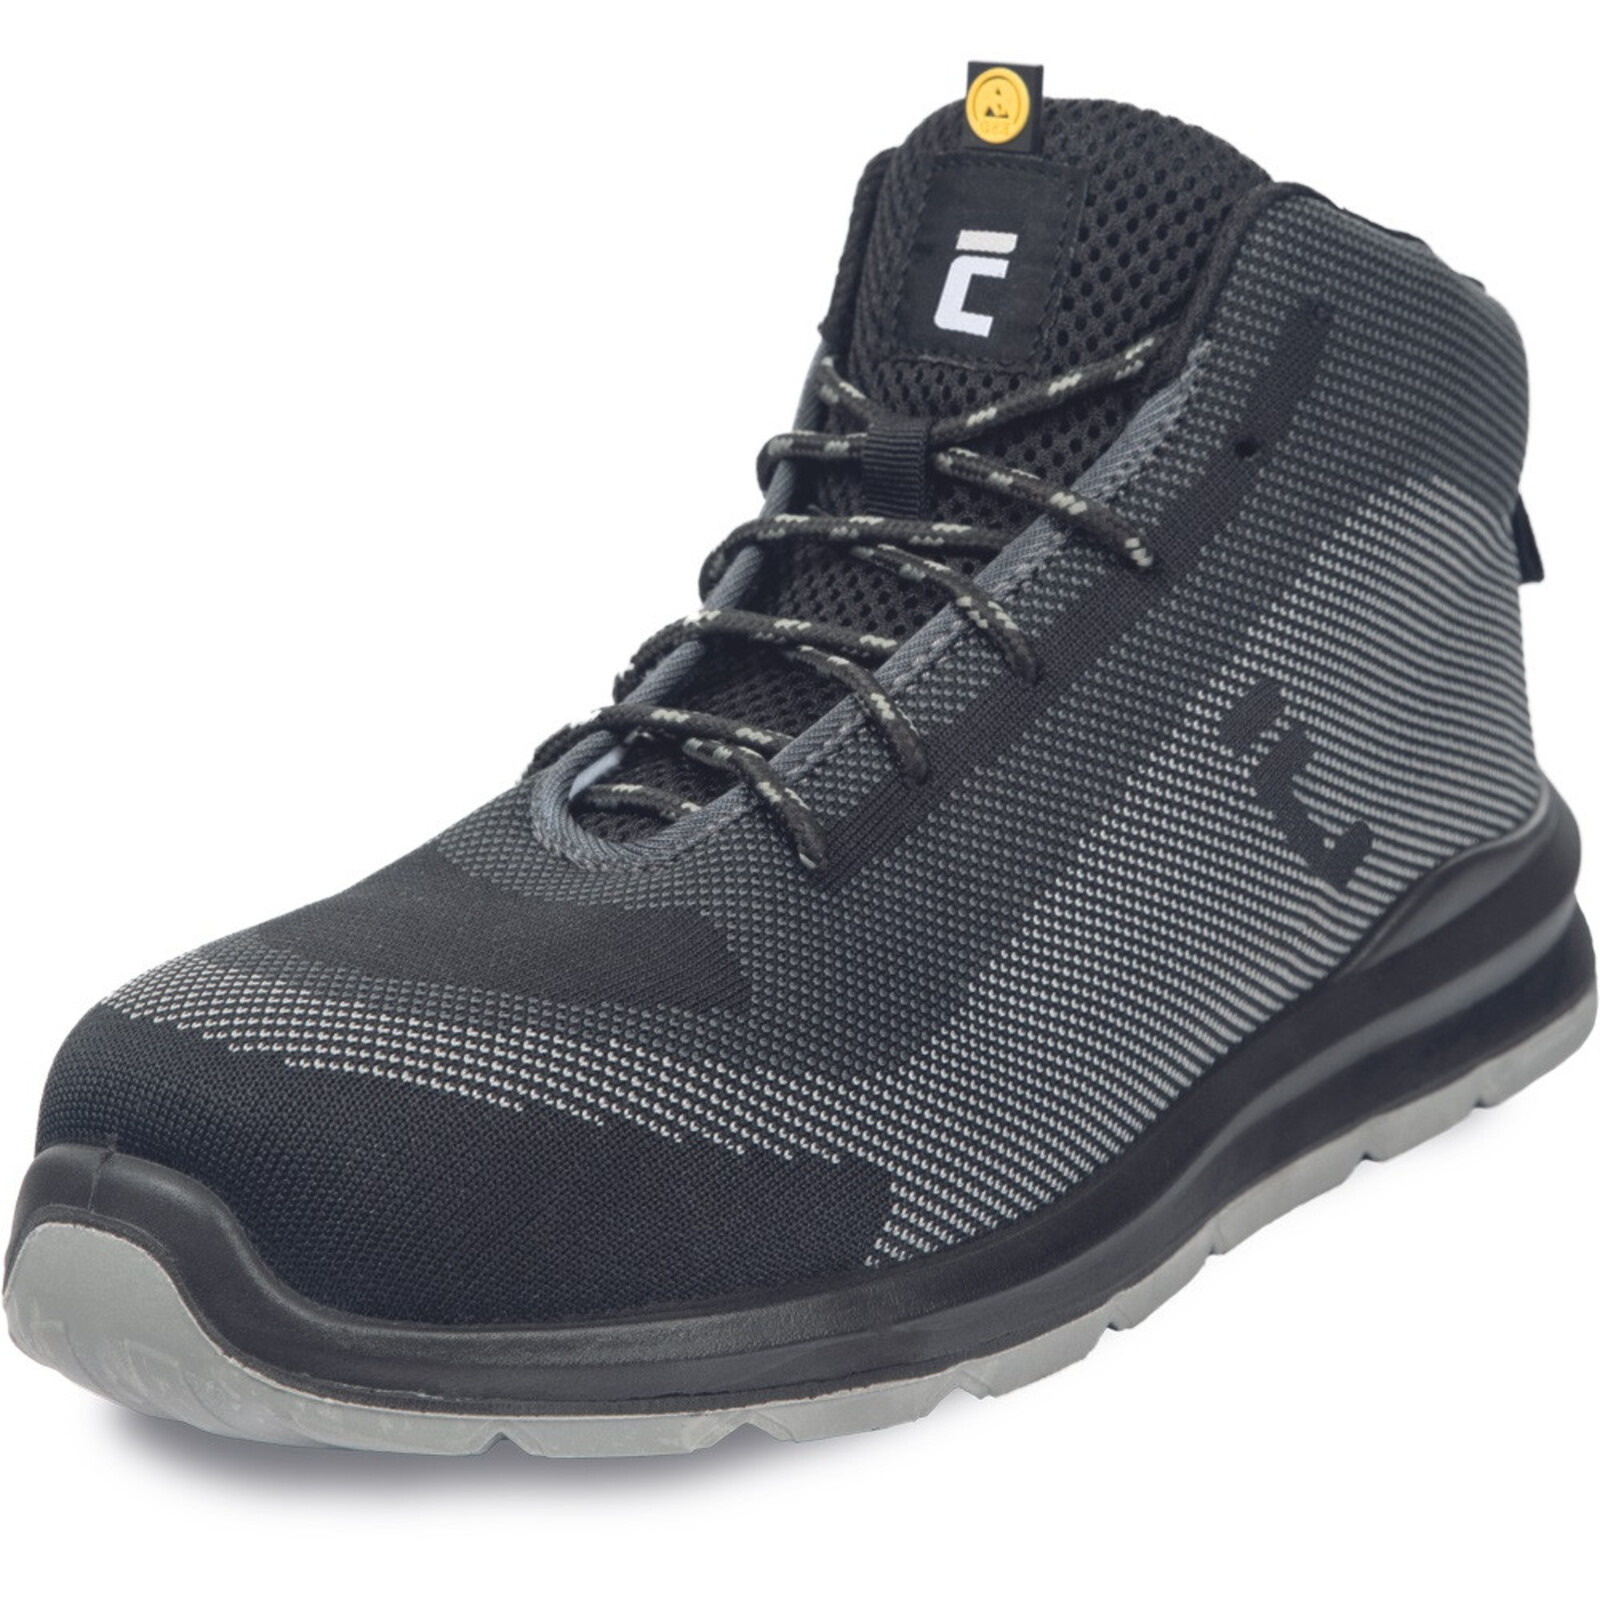 Bezpečnostná členková obuv Cerva Vadorros S1P MF ESD SRC - veľkosť: 43, farba: sivá/čierna